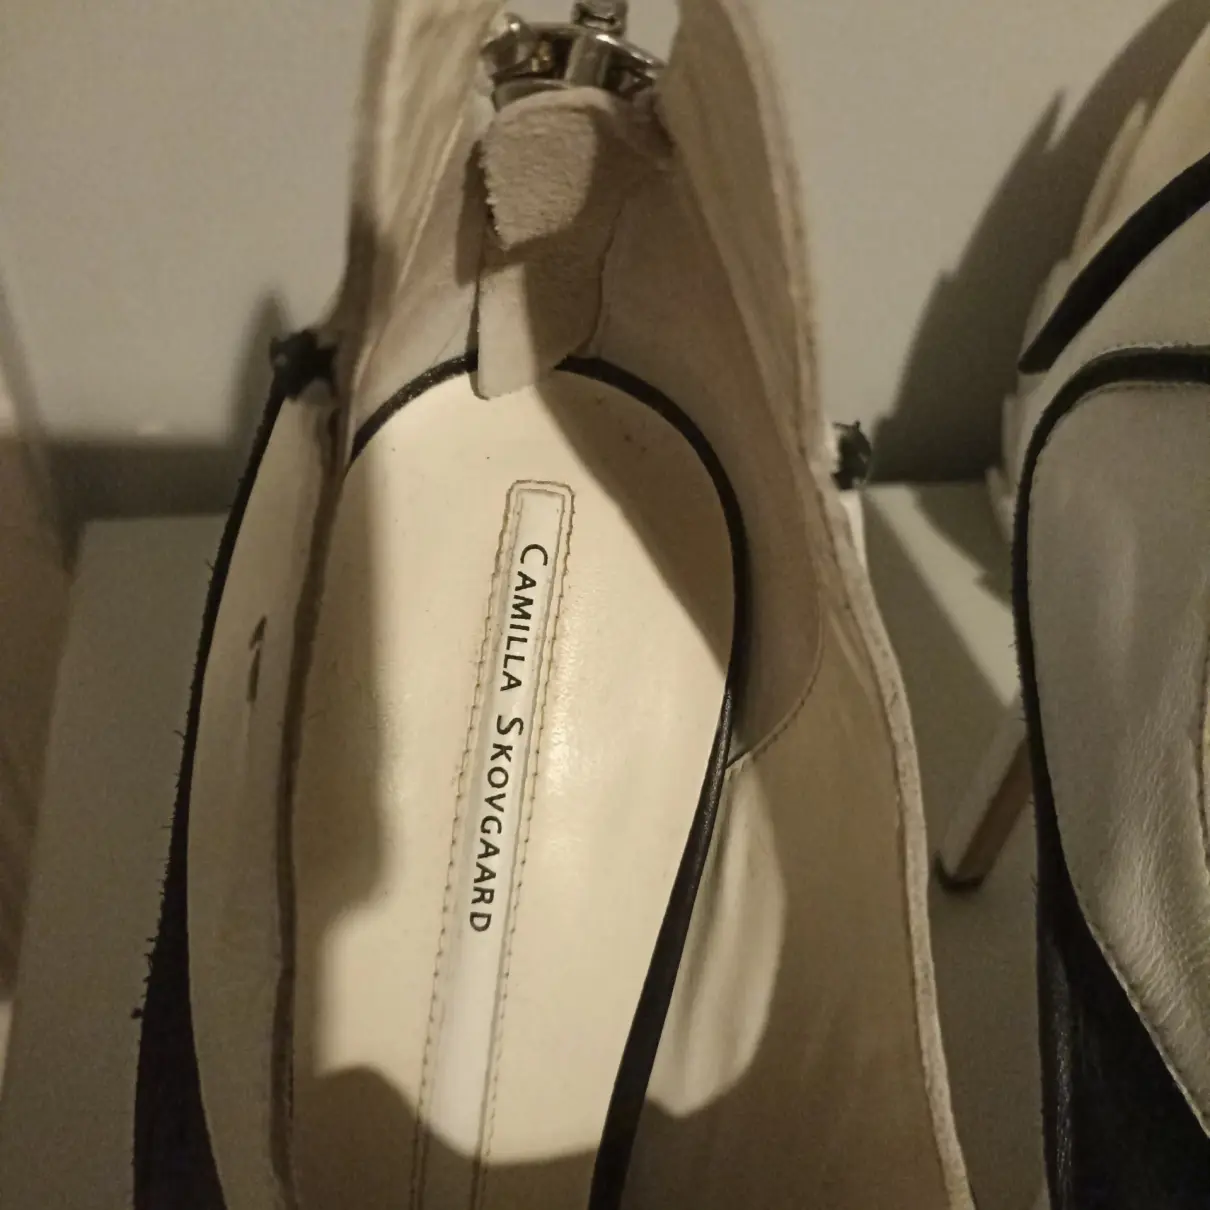 Buy Camilla Skovgaard Leather heels online